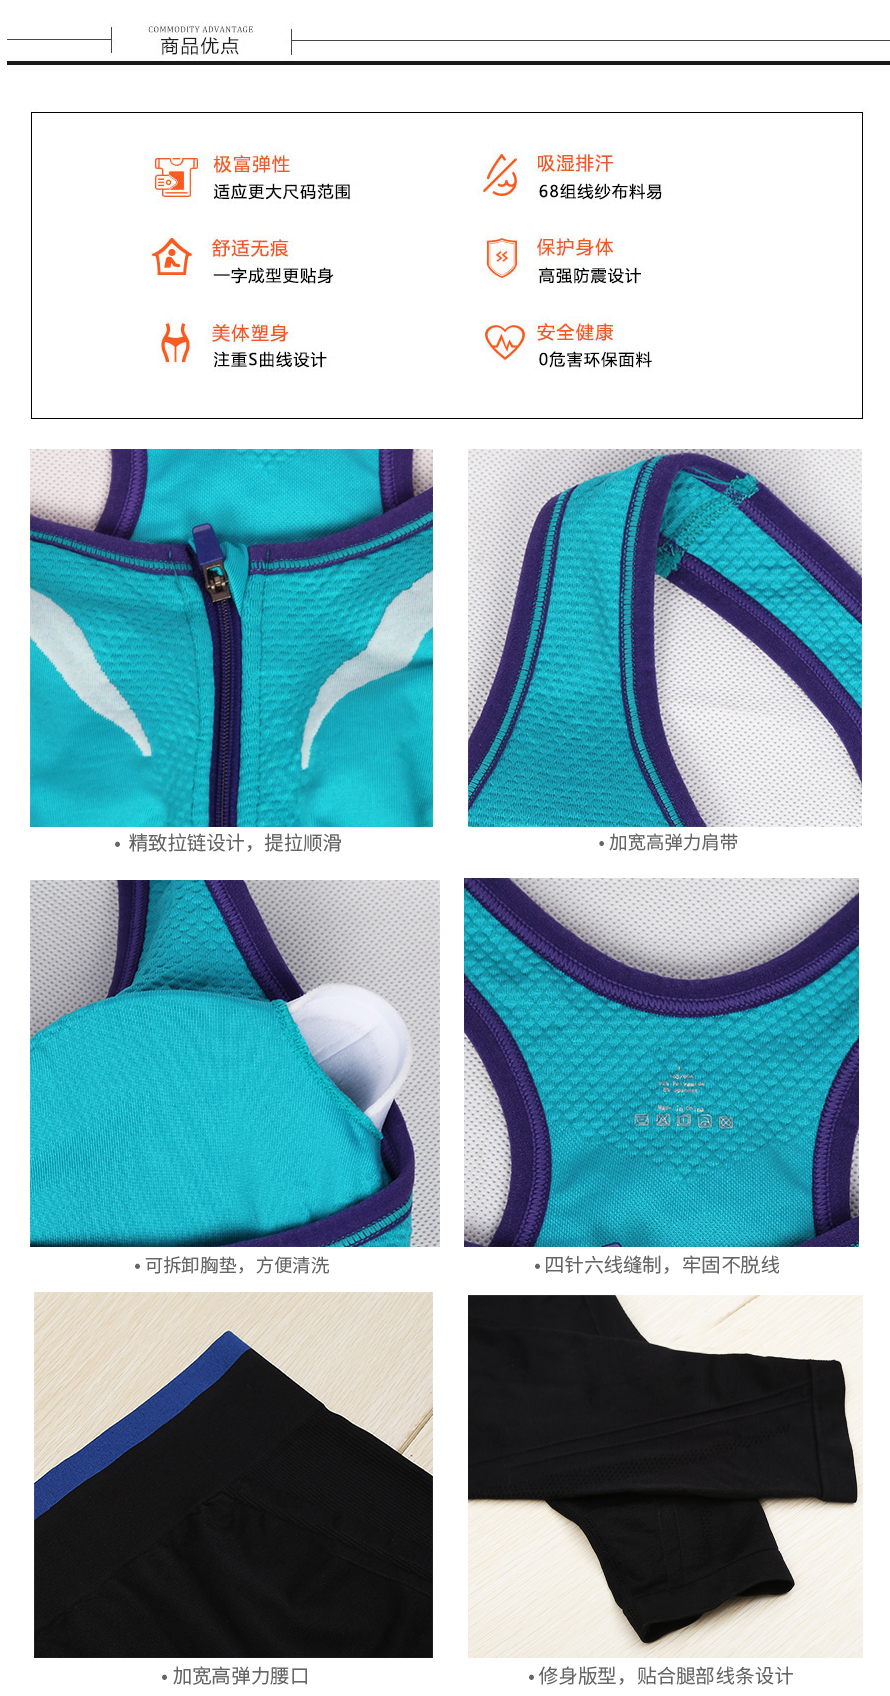 生产加工梵雪儿系列瑜伽服6817+8100运动文胸套装套尔友针织，义乌17年专注无缝内衣生产厂家。